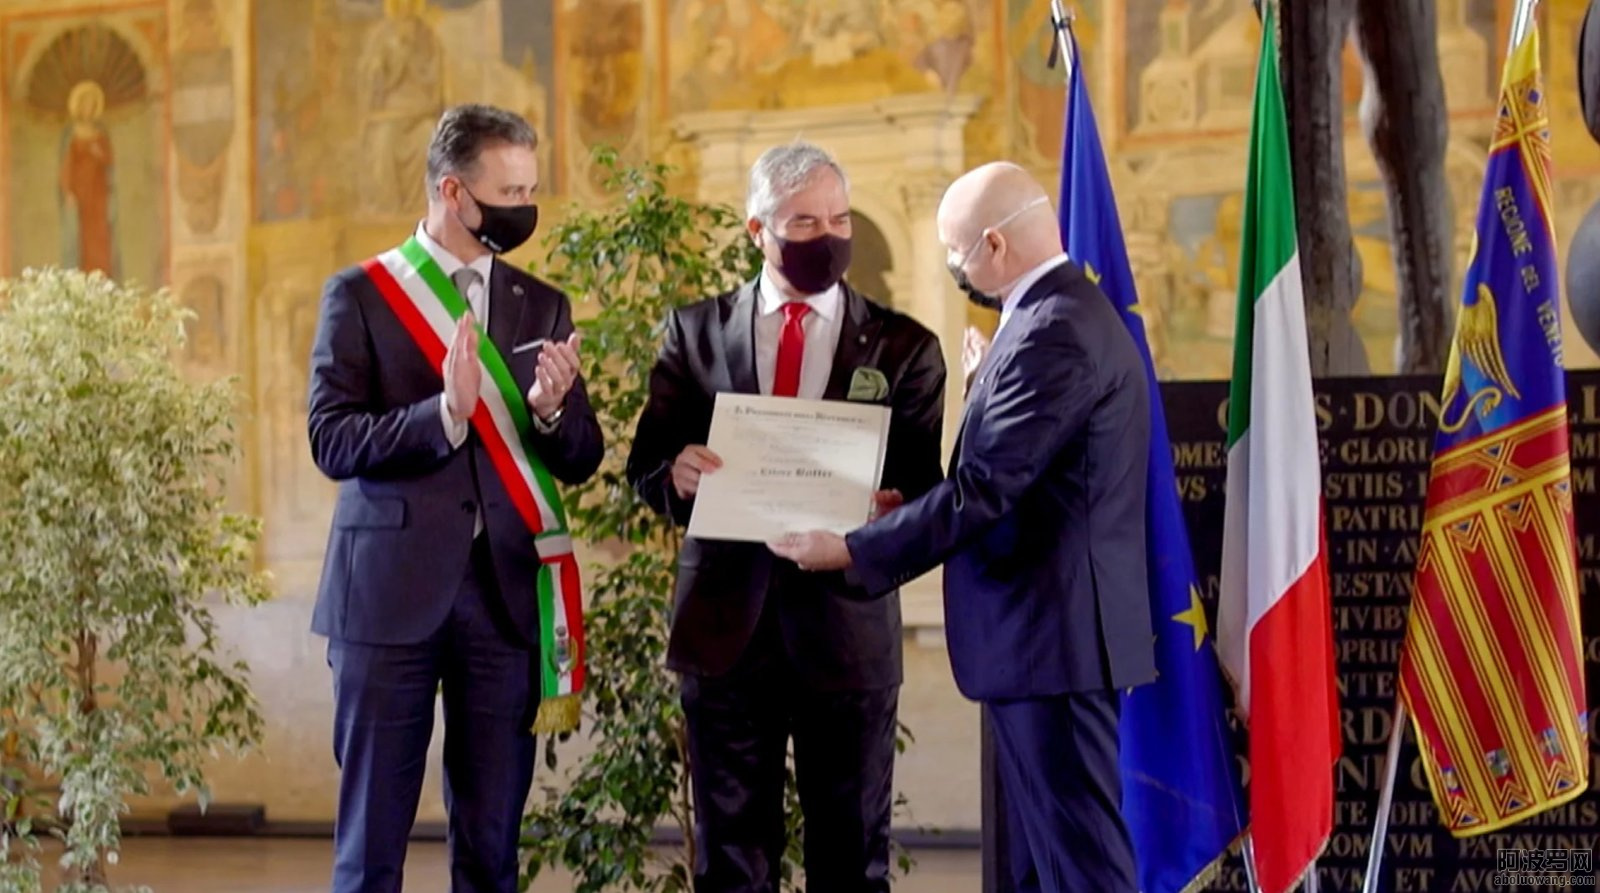 義大利總統向帕多瓦山達基教會的志願牧師代表授予義大利共和國騎士稱號.jpg